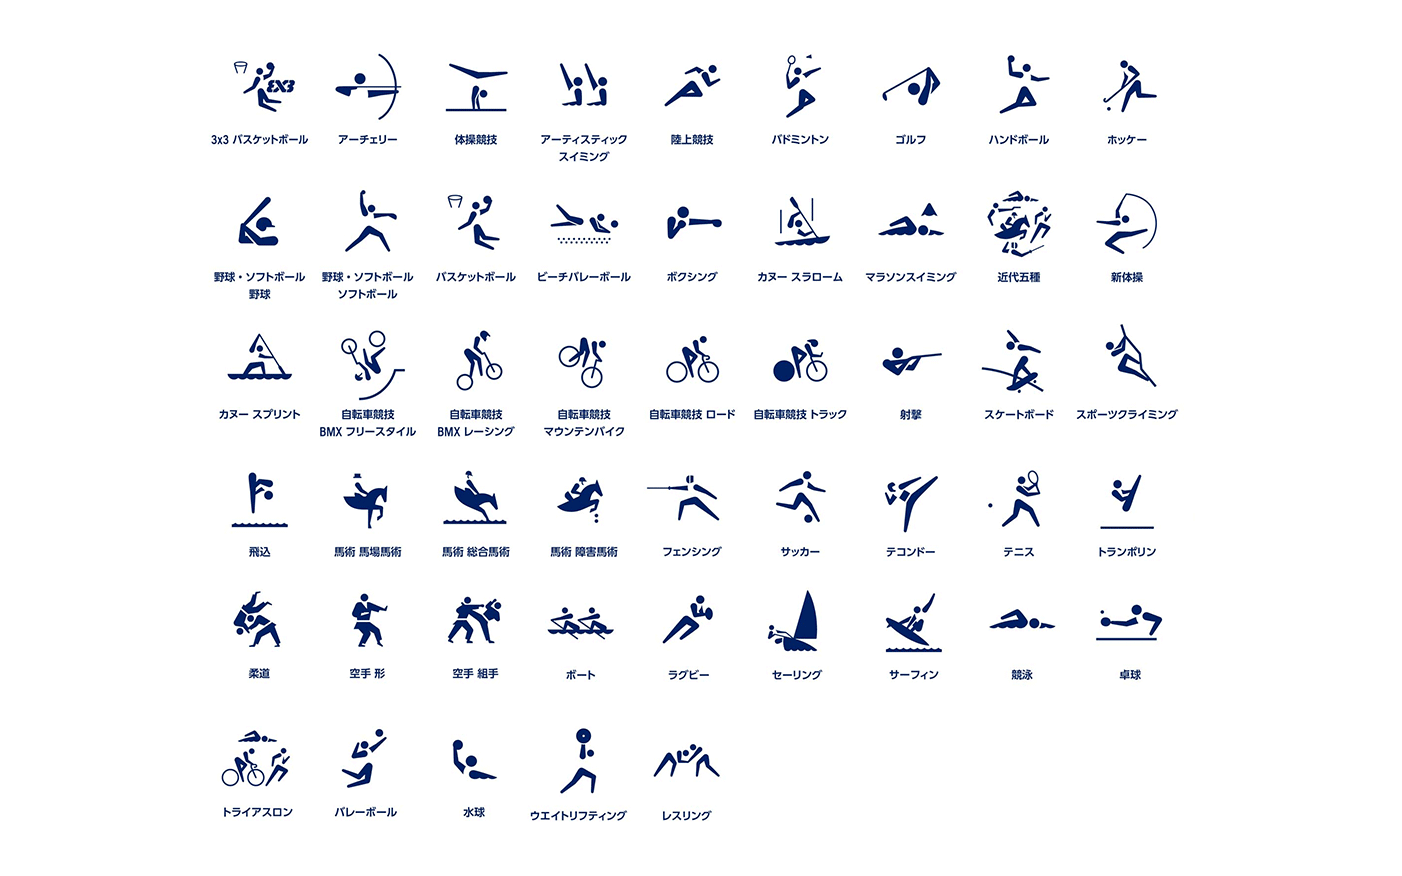 奥运会各项运动图标图片